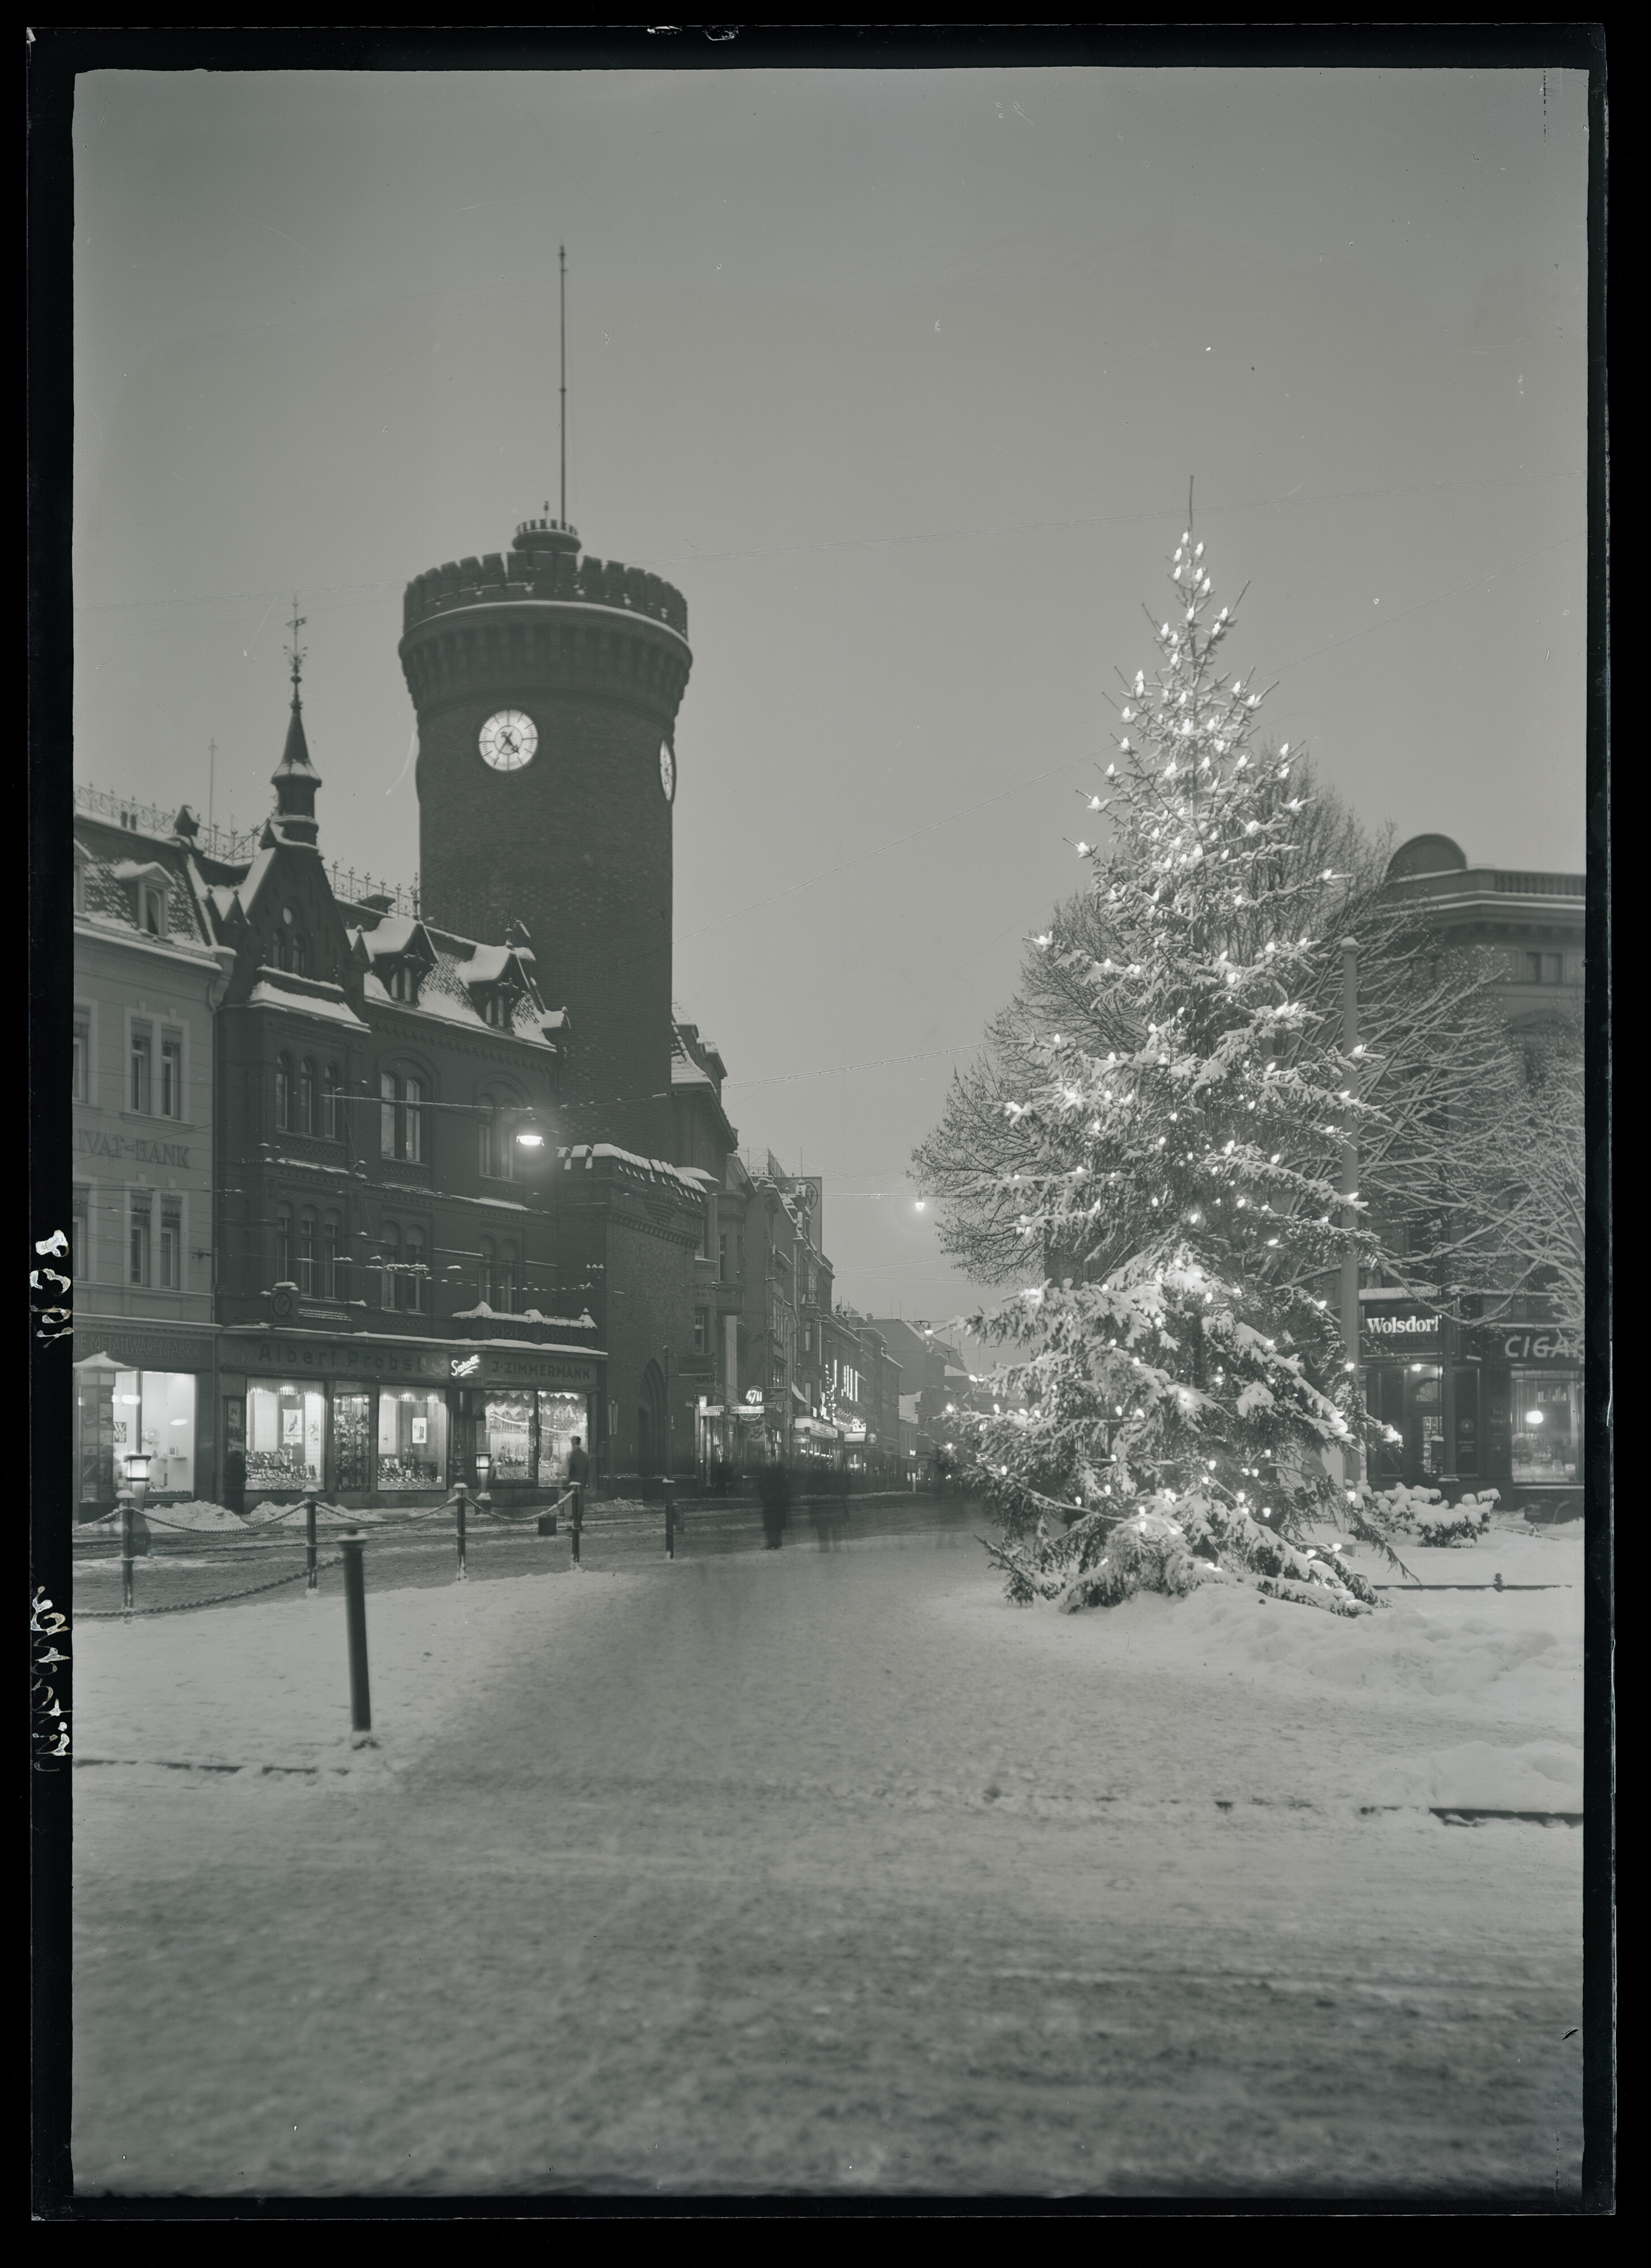 Spremberger Turm und Spremberger Straße, die "Einkaufsmeile" der Stadt Cottbus, im Winter 1938 (Stadtmuseum Cottbus CC BY-NC-SA)